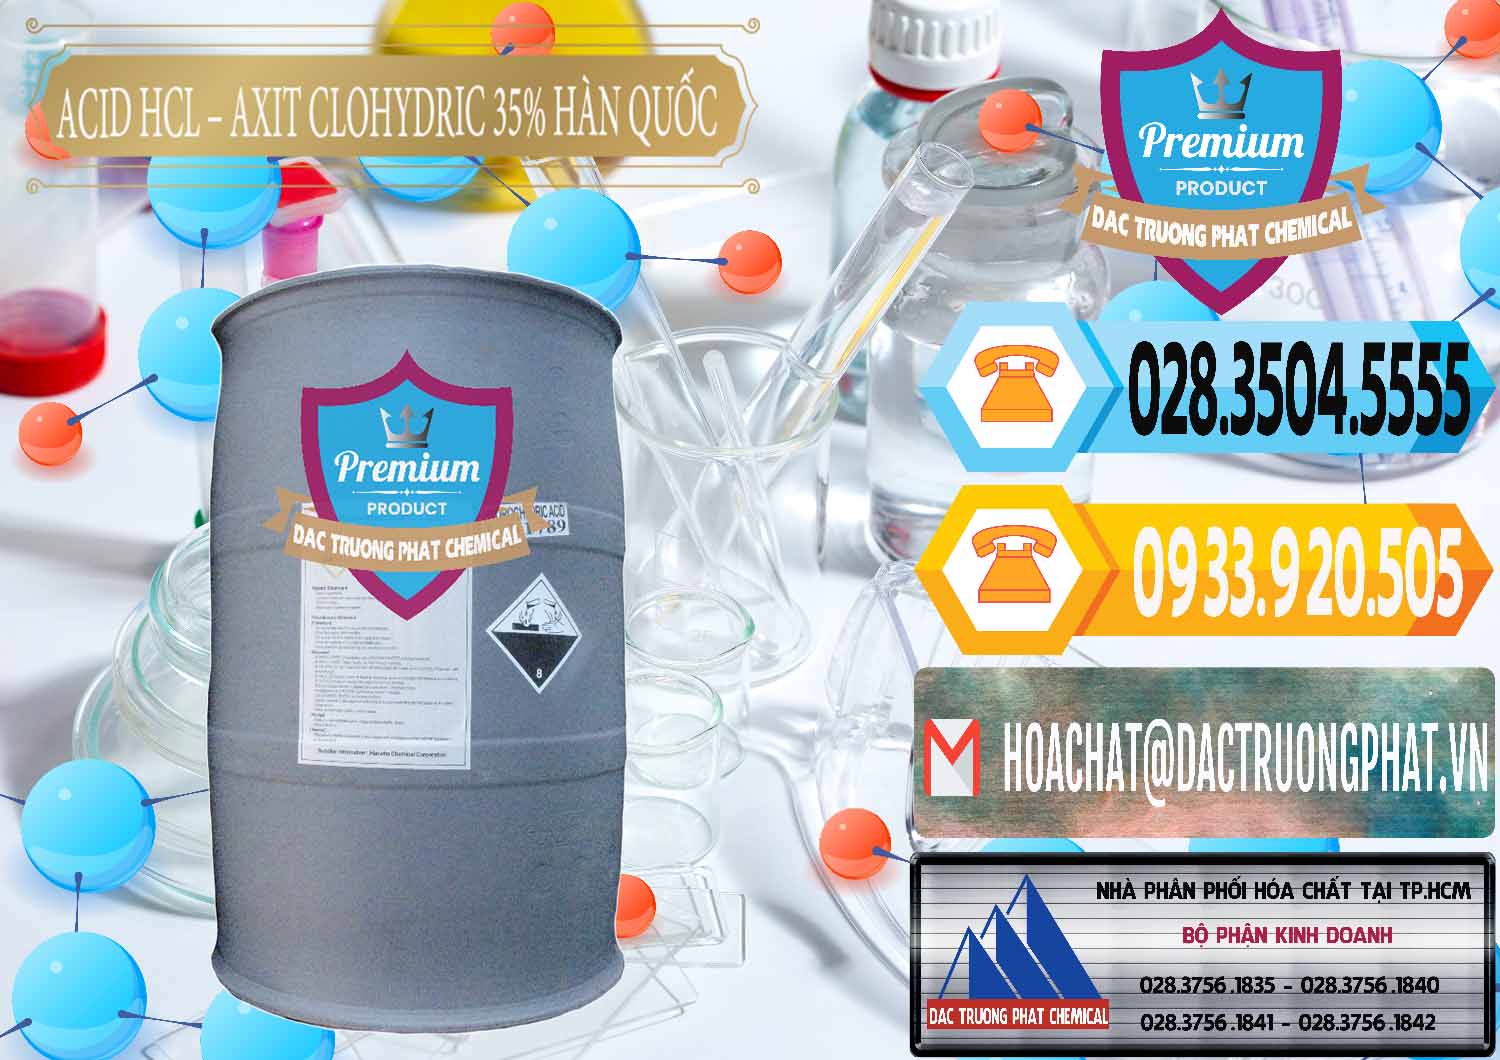 Cung ứng ( bán ) Acid HCL - Axit Cohidric 35% Hàn Quốc Korea - 0011 - Nơi chuyên nhập khẩu ( cung cấp ) hóa chất tại TP.HCM - hoachattayrua.net